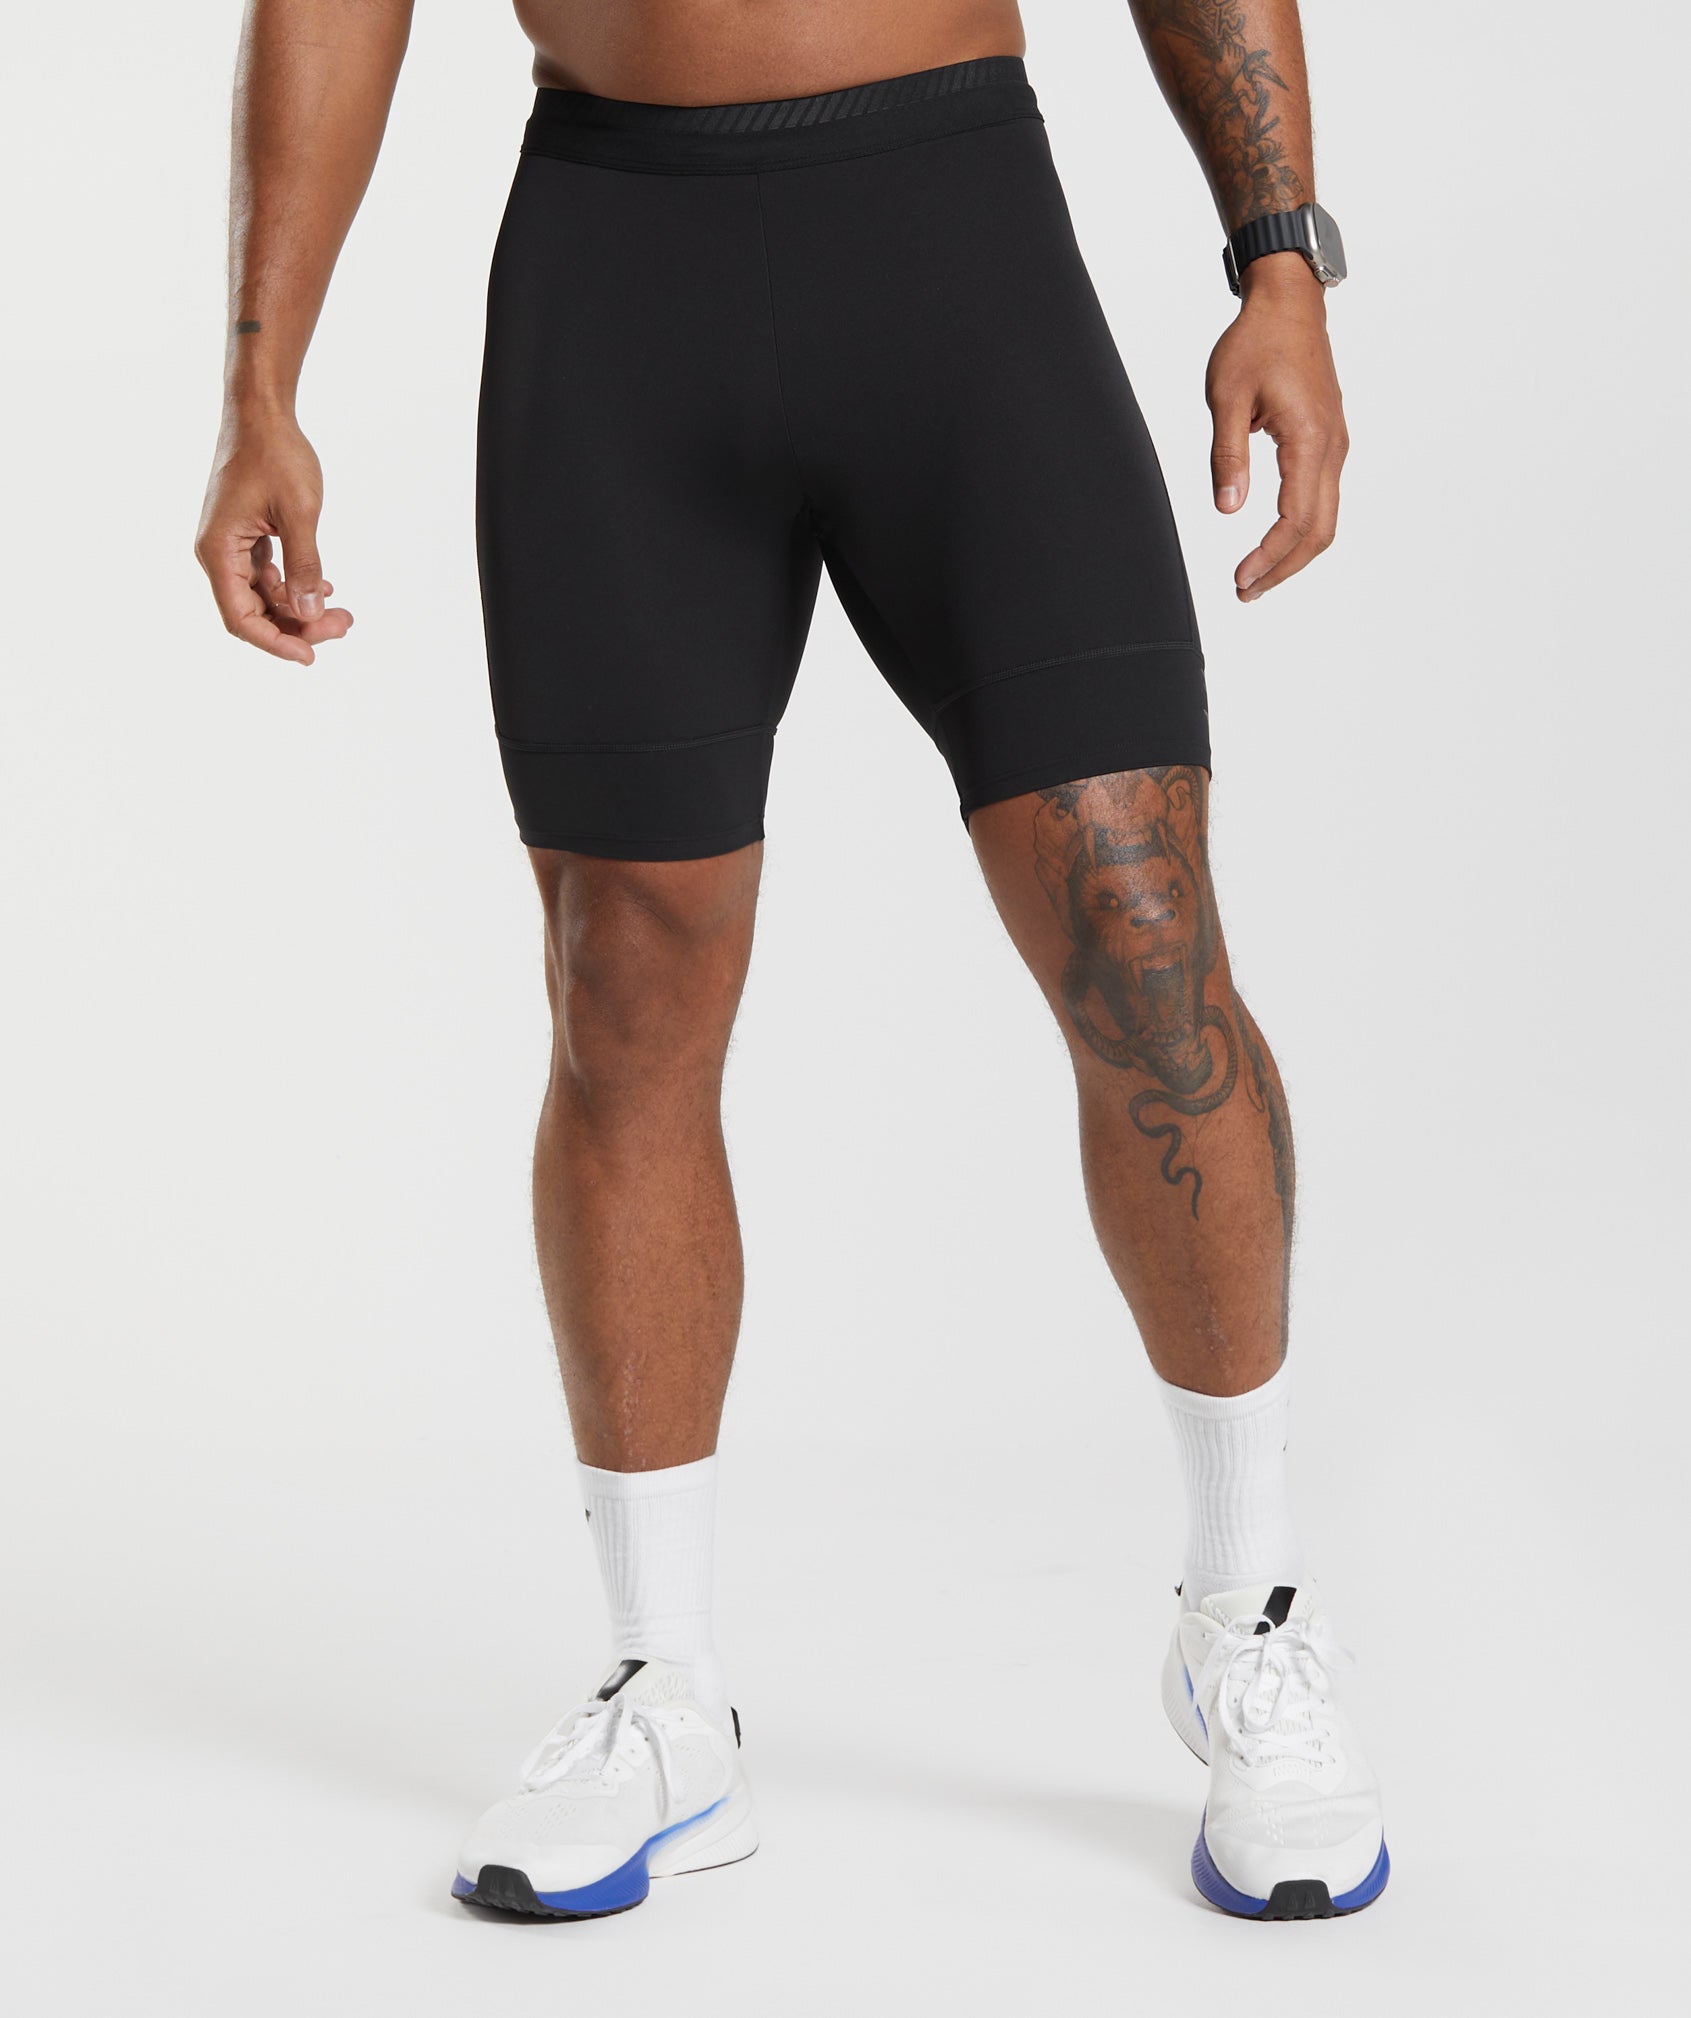 Aero Split 1.5 Short -, Running leggings men